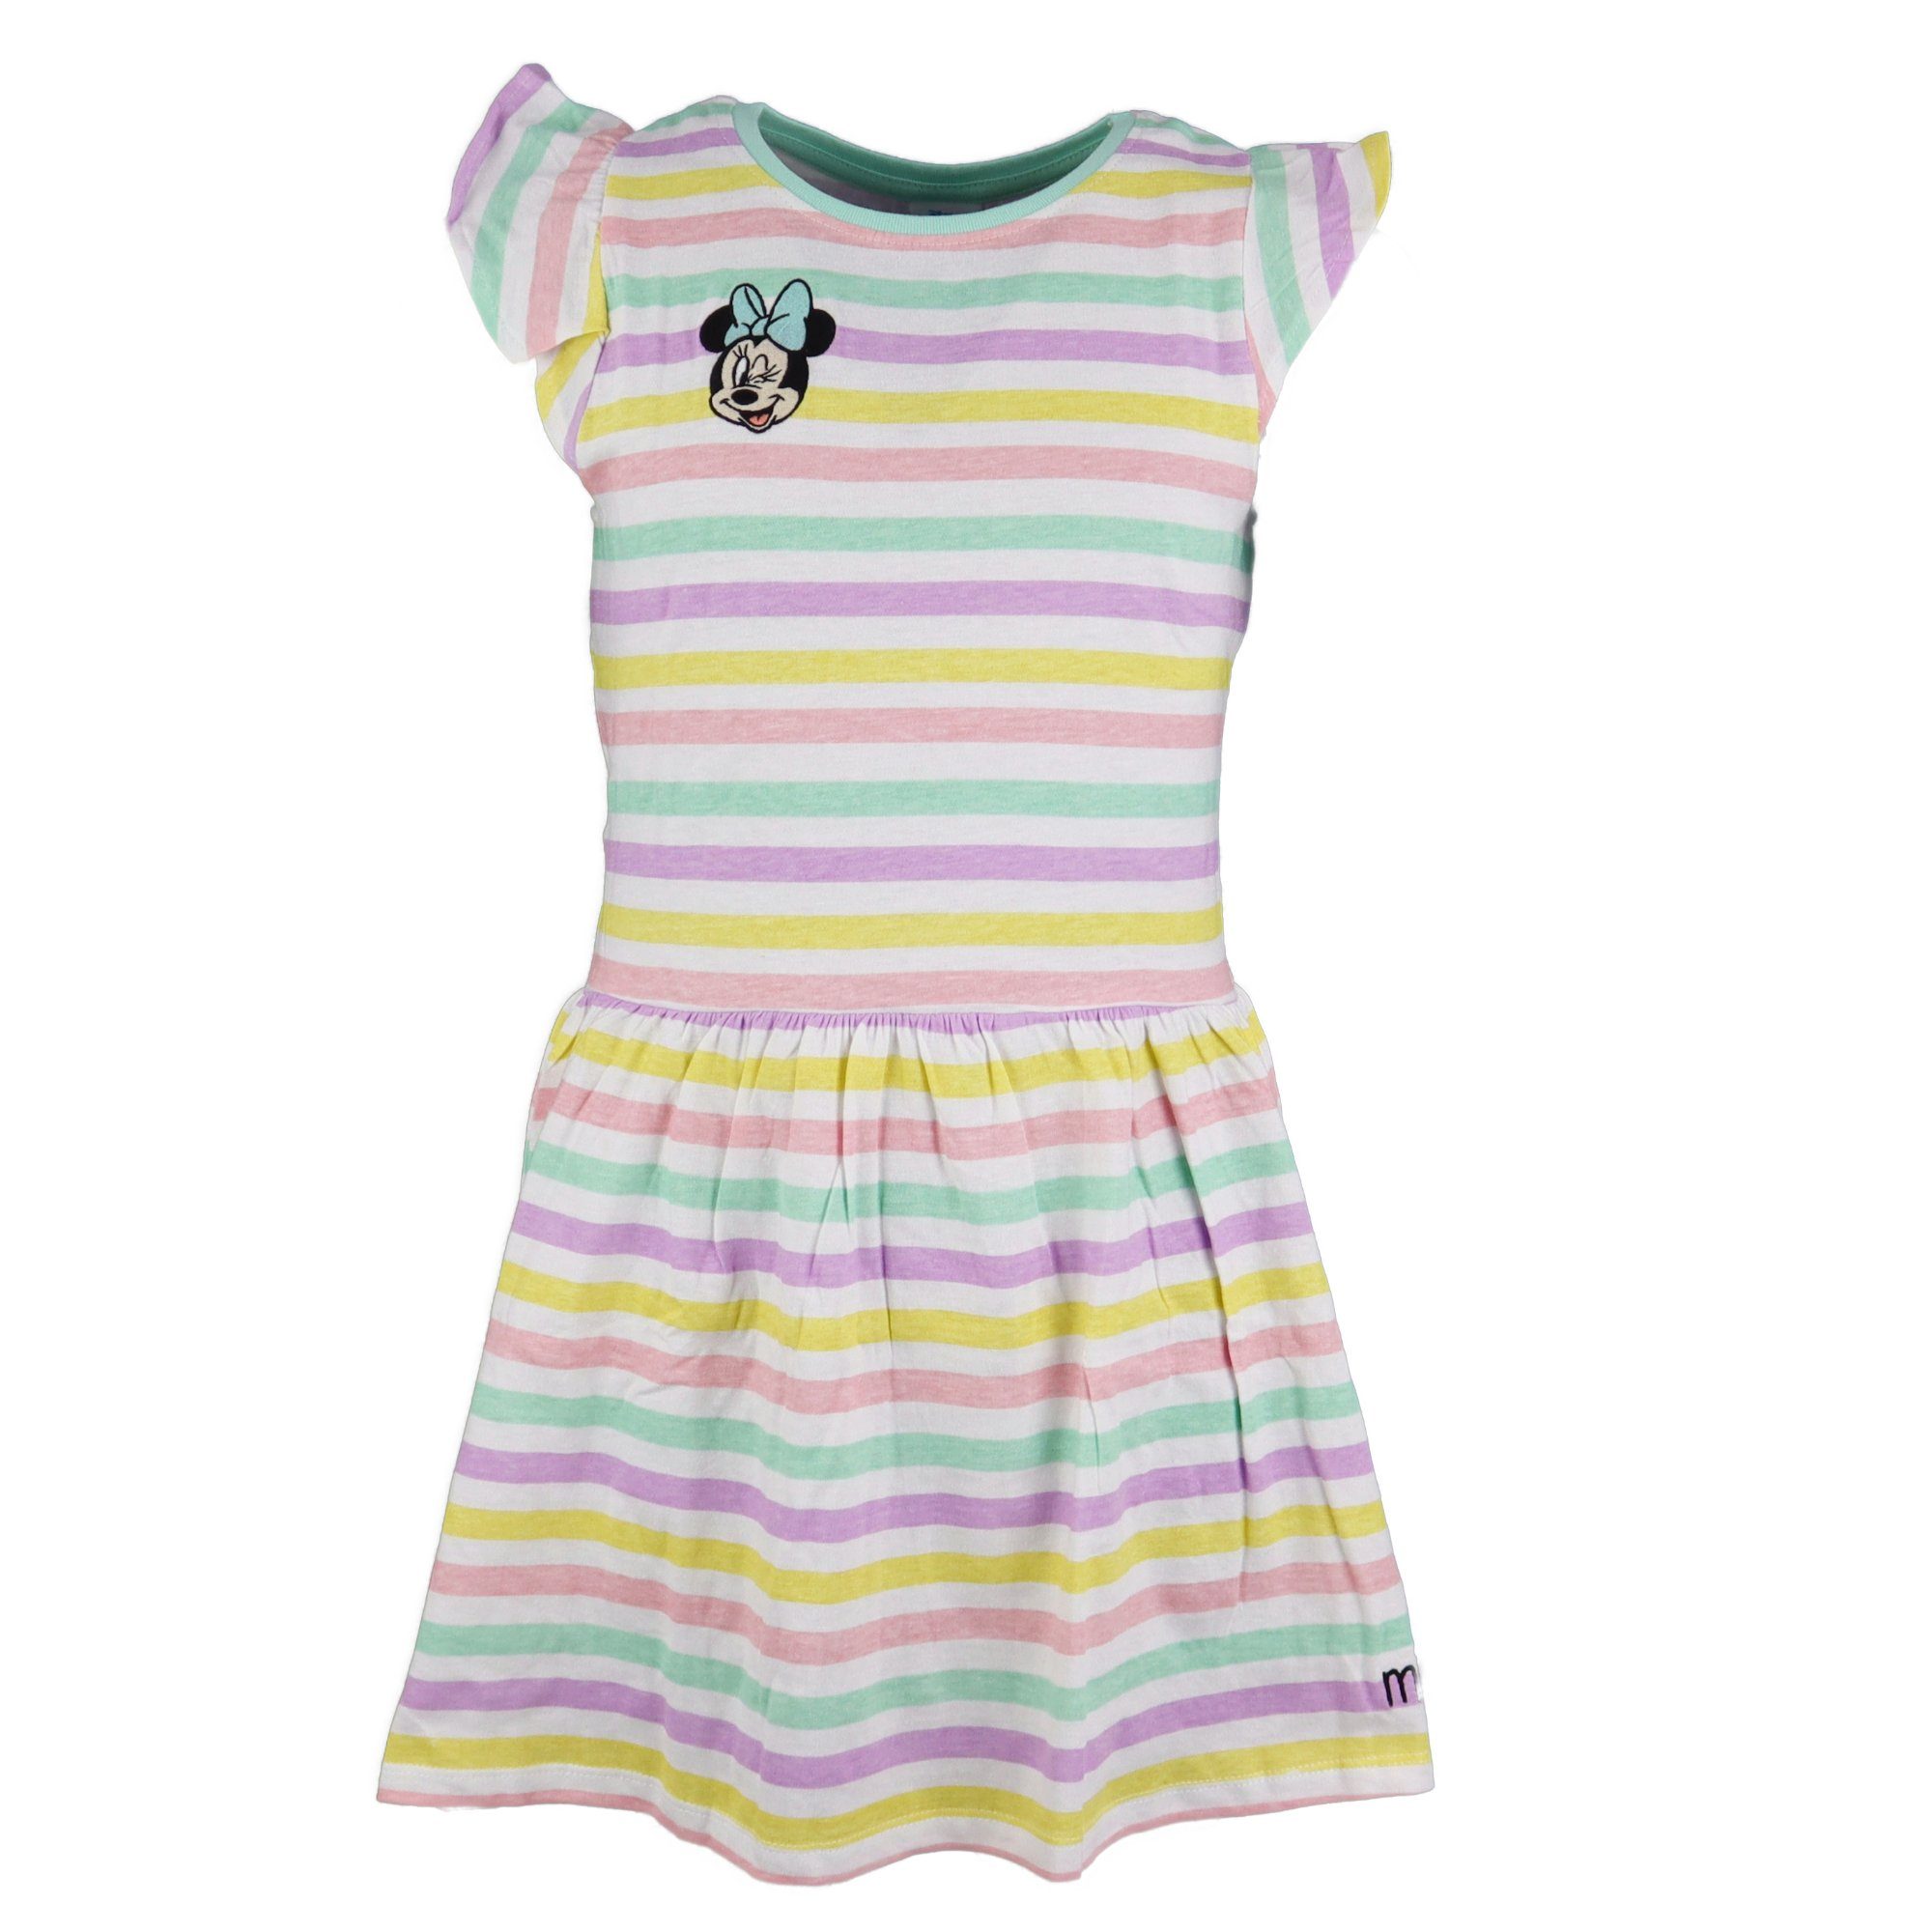 Disney Minnie Mouse Sommerkleid Minnie Mädchen Kinder Kleid Gr. 104 bis 134, 100% Baumwolle Grün